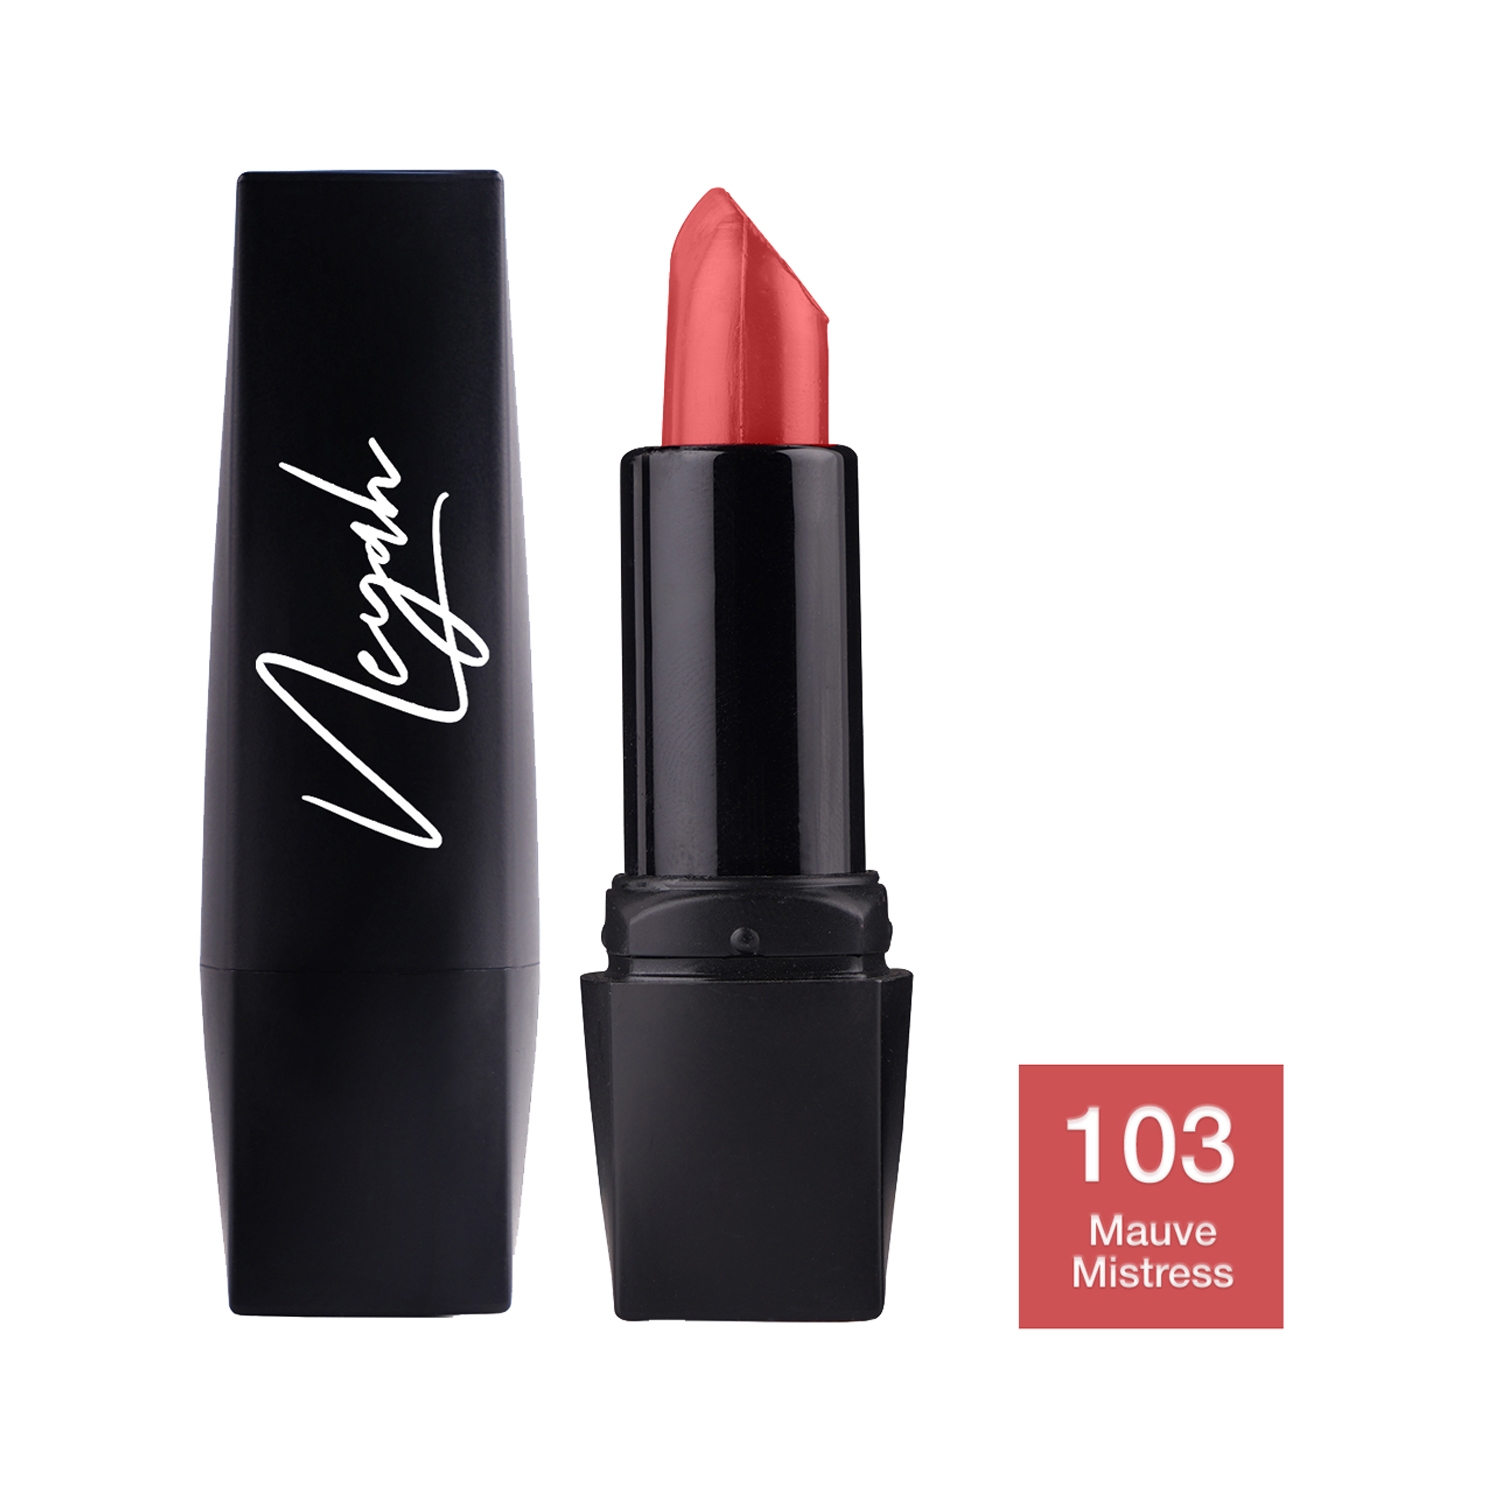 Neyah | Neyah Creamlicious Matte Lipstick - 103 Mauve Mistress (4g)